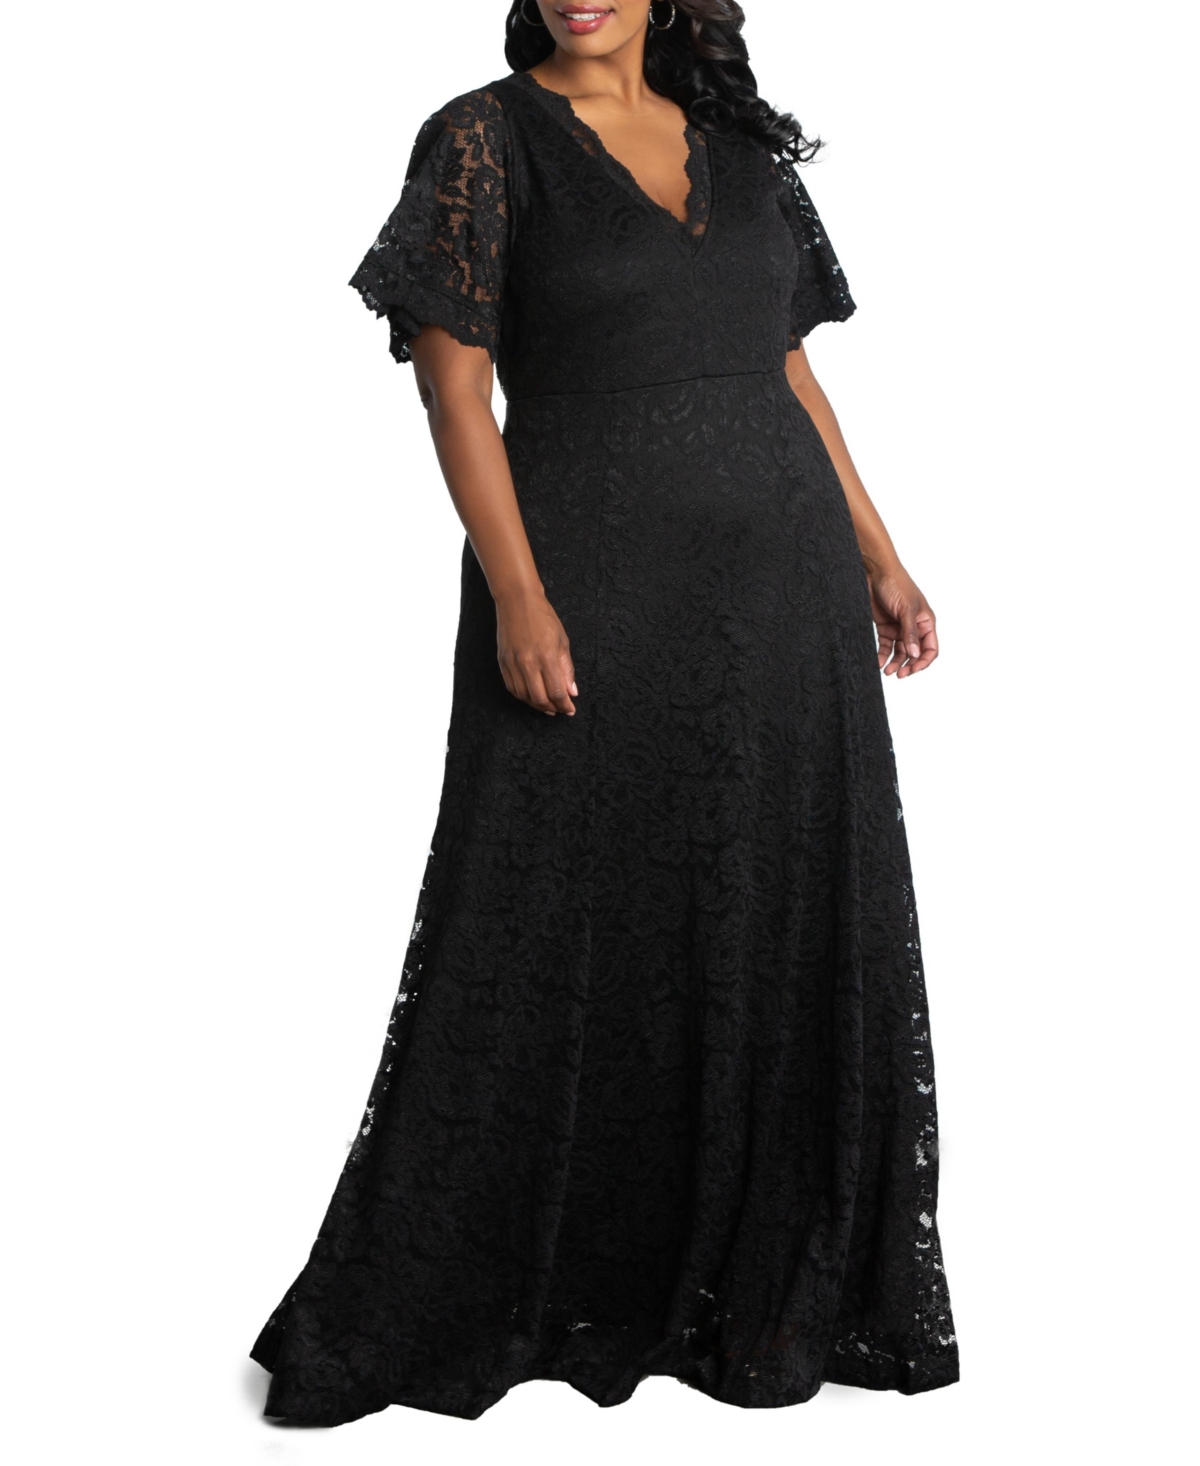 Women's Plus Size Symphony Lace Evening Gown - Black